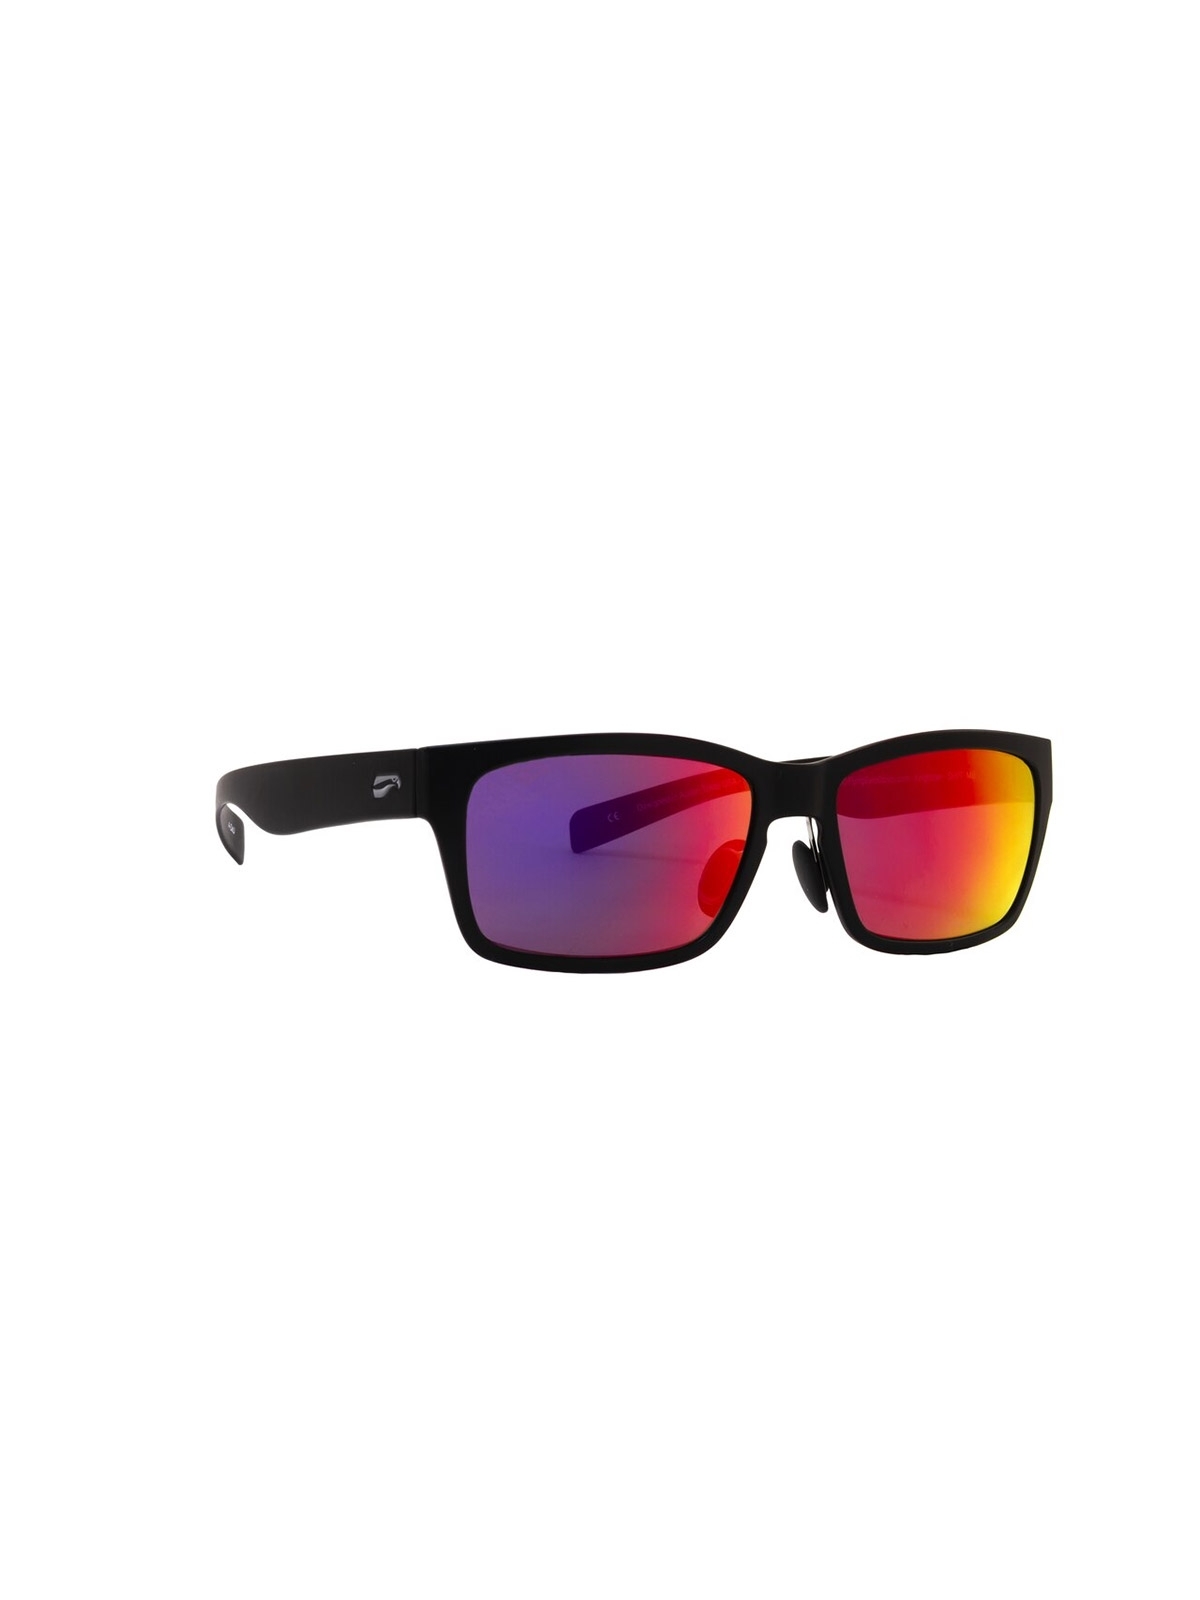 Flying Eyes Sunglasses Kingfisher - Glossy Black Frame, Mirrored Sunset Lenses